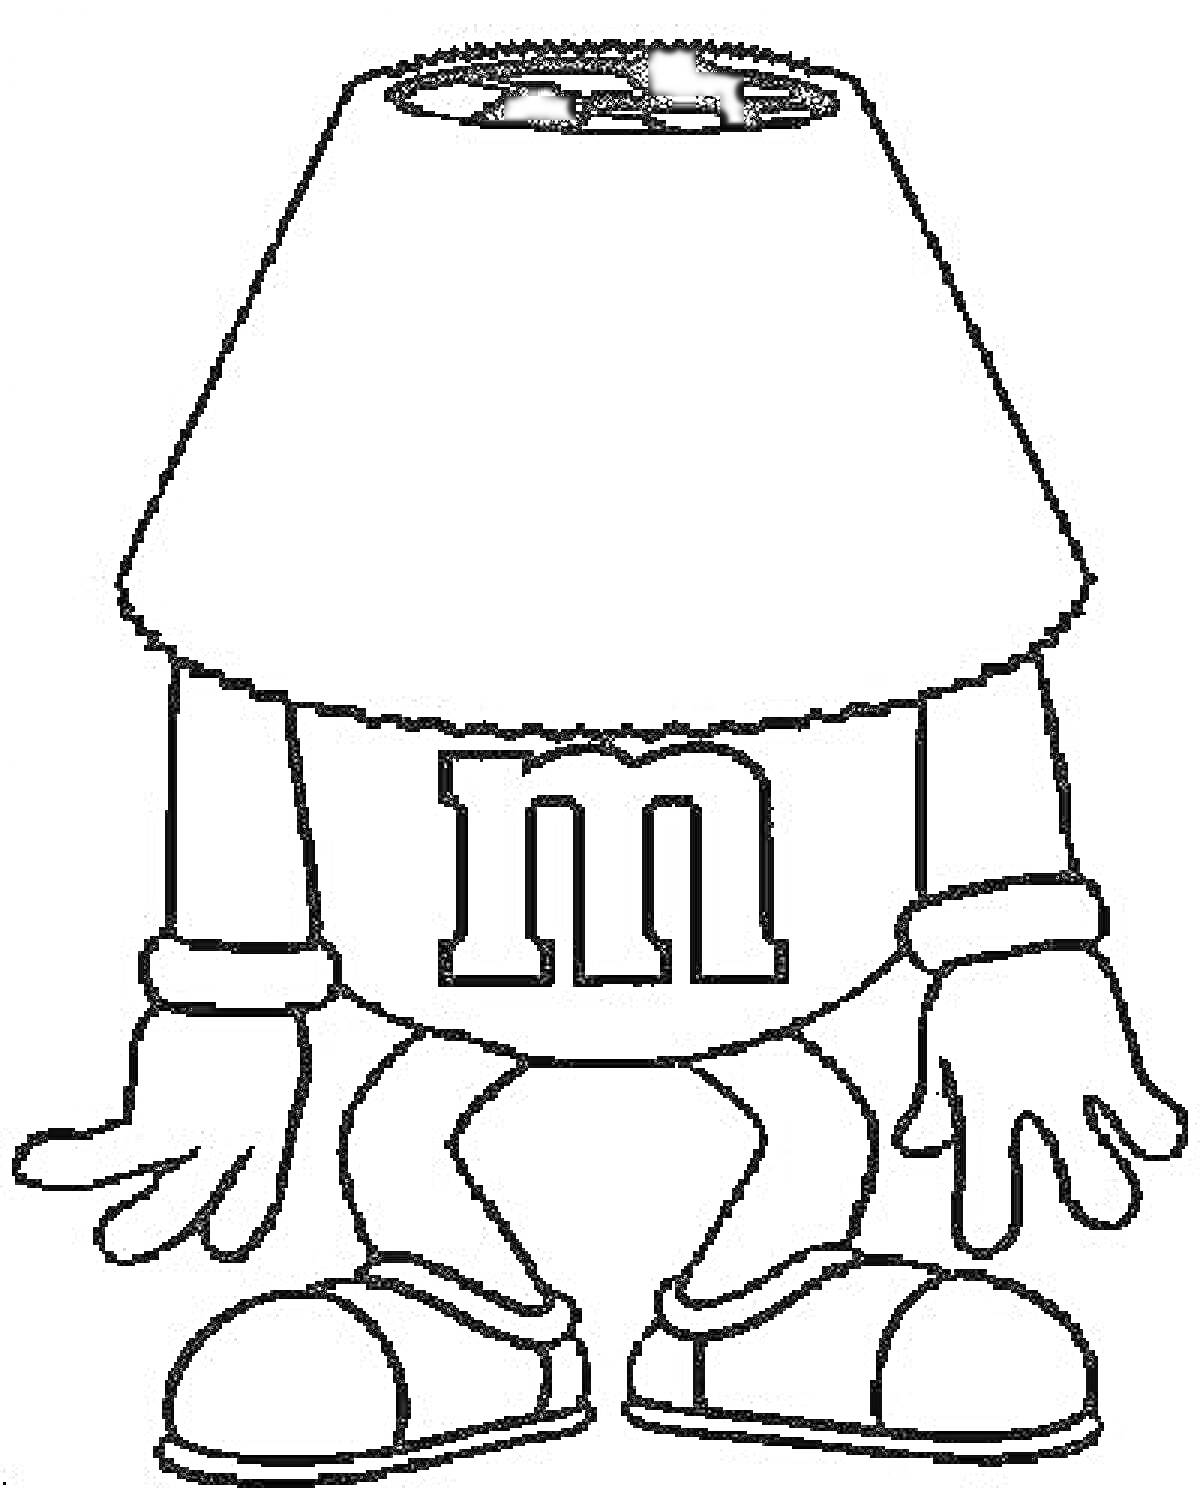 Раскраска Эмемдемс с абажуром на голове, руки в перчатках, кроссовки на ногах